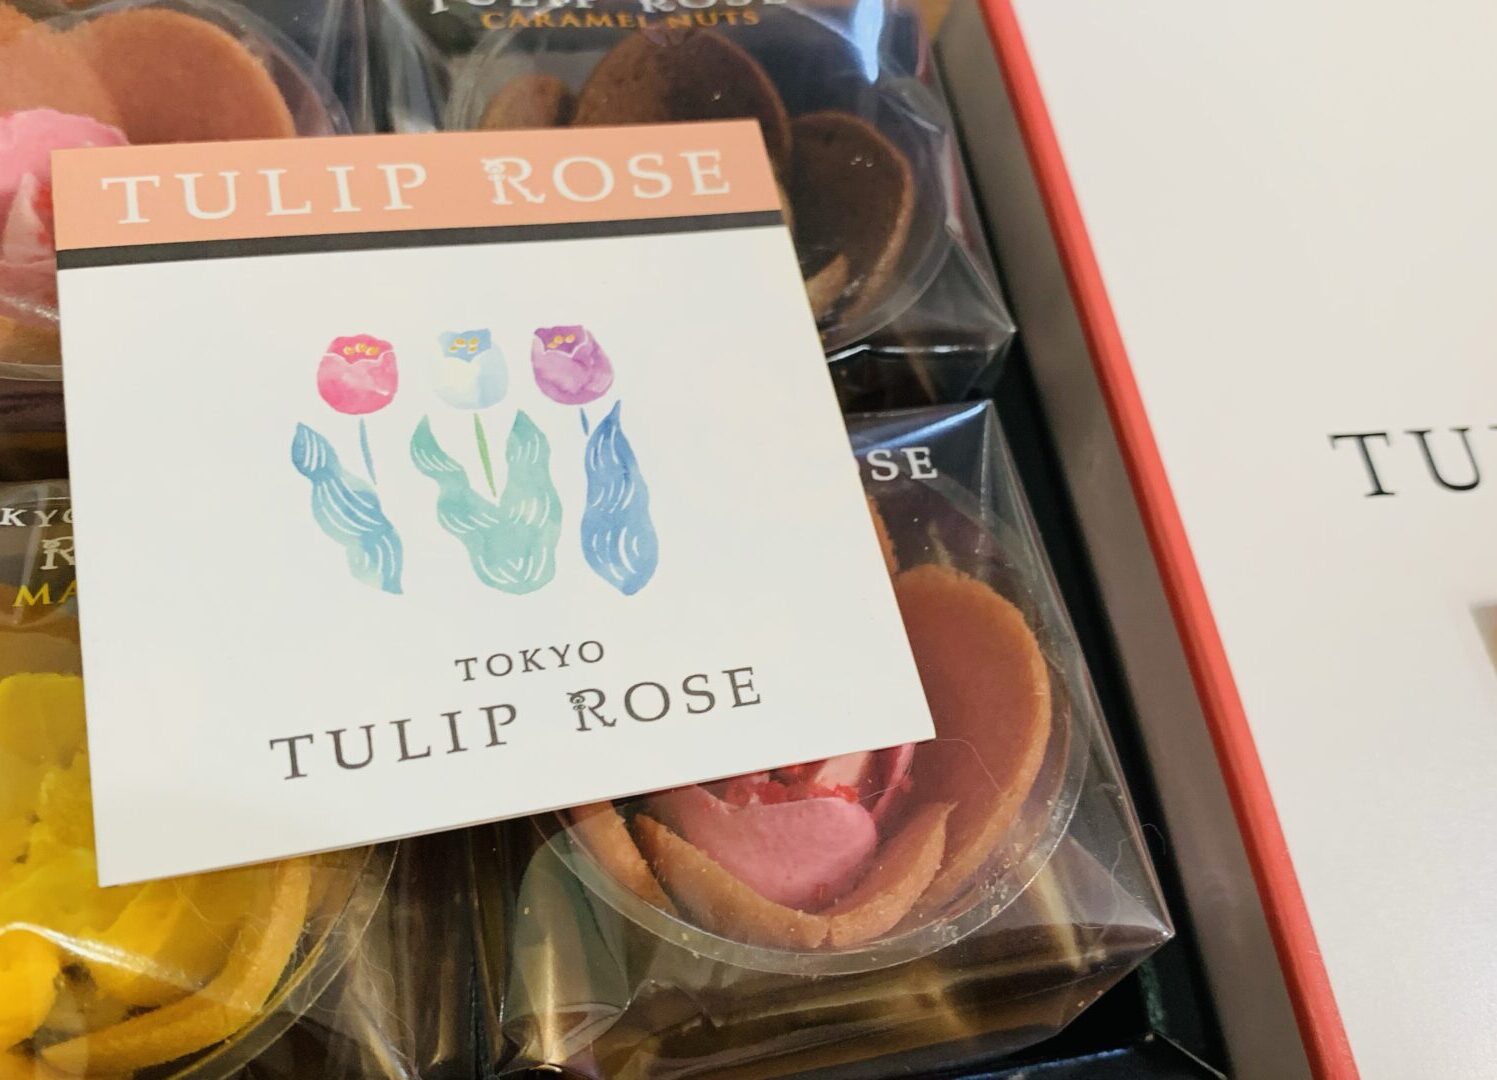 Tulip rose box